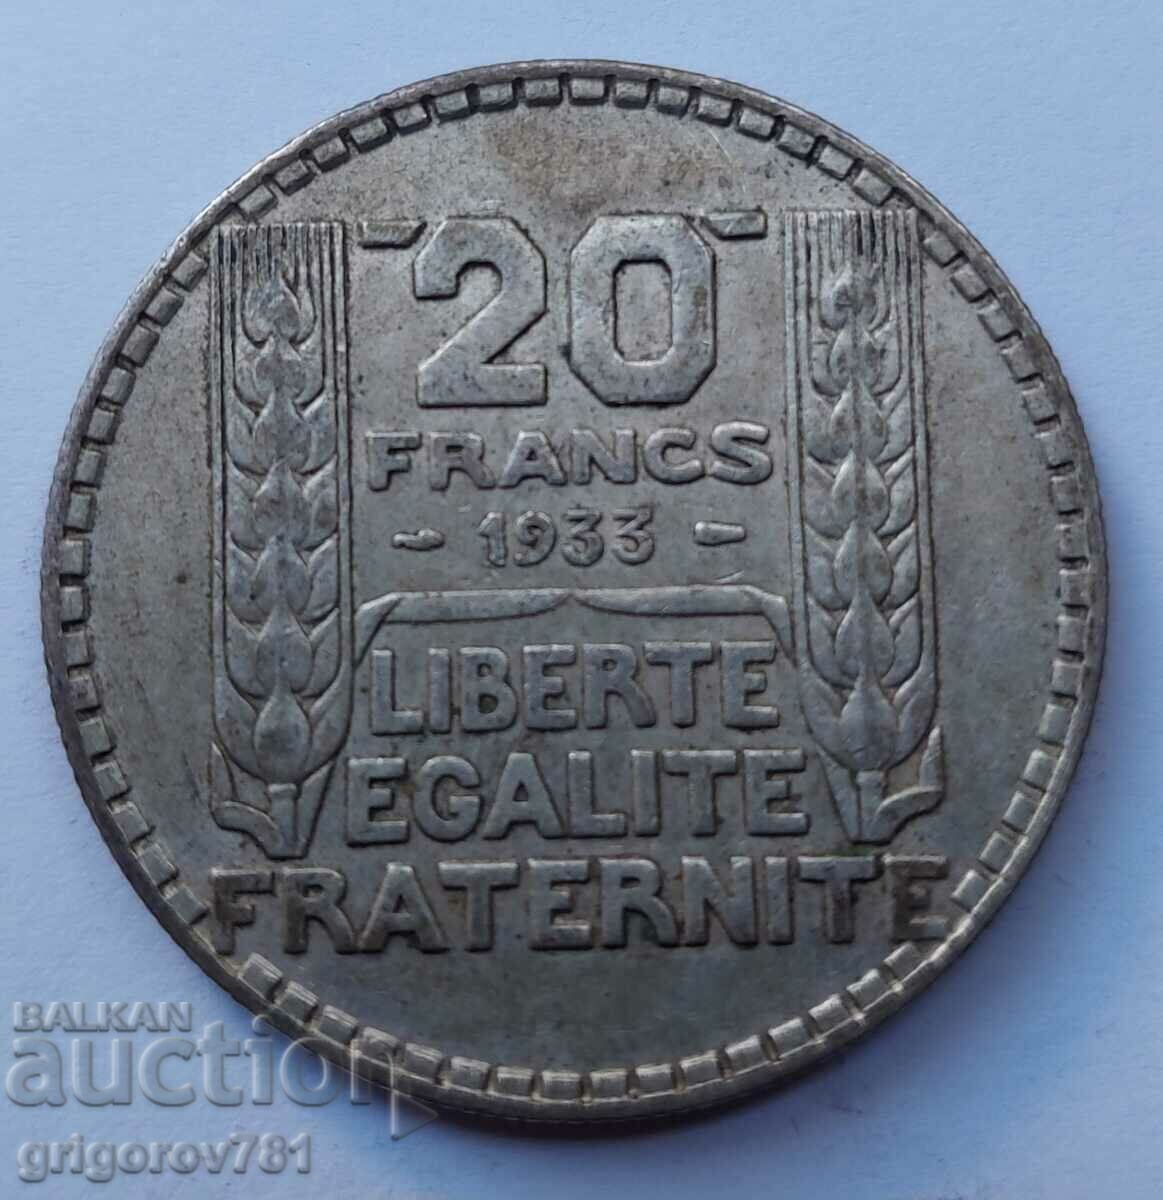 20 Franci Argint Franta 1933 - Moneda de argint #48